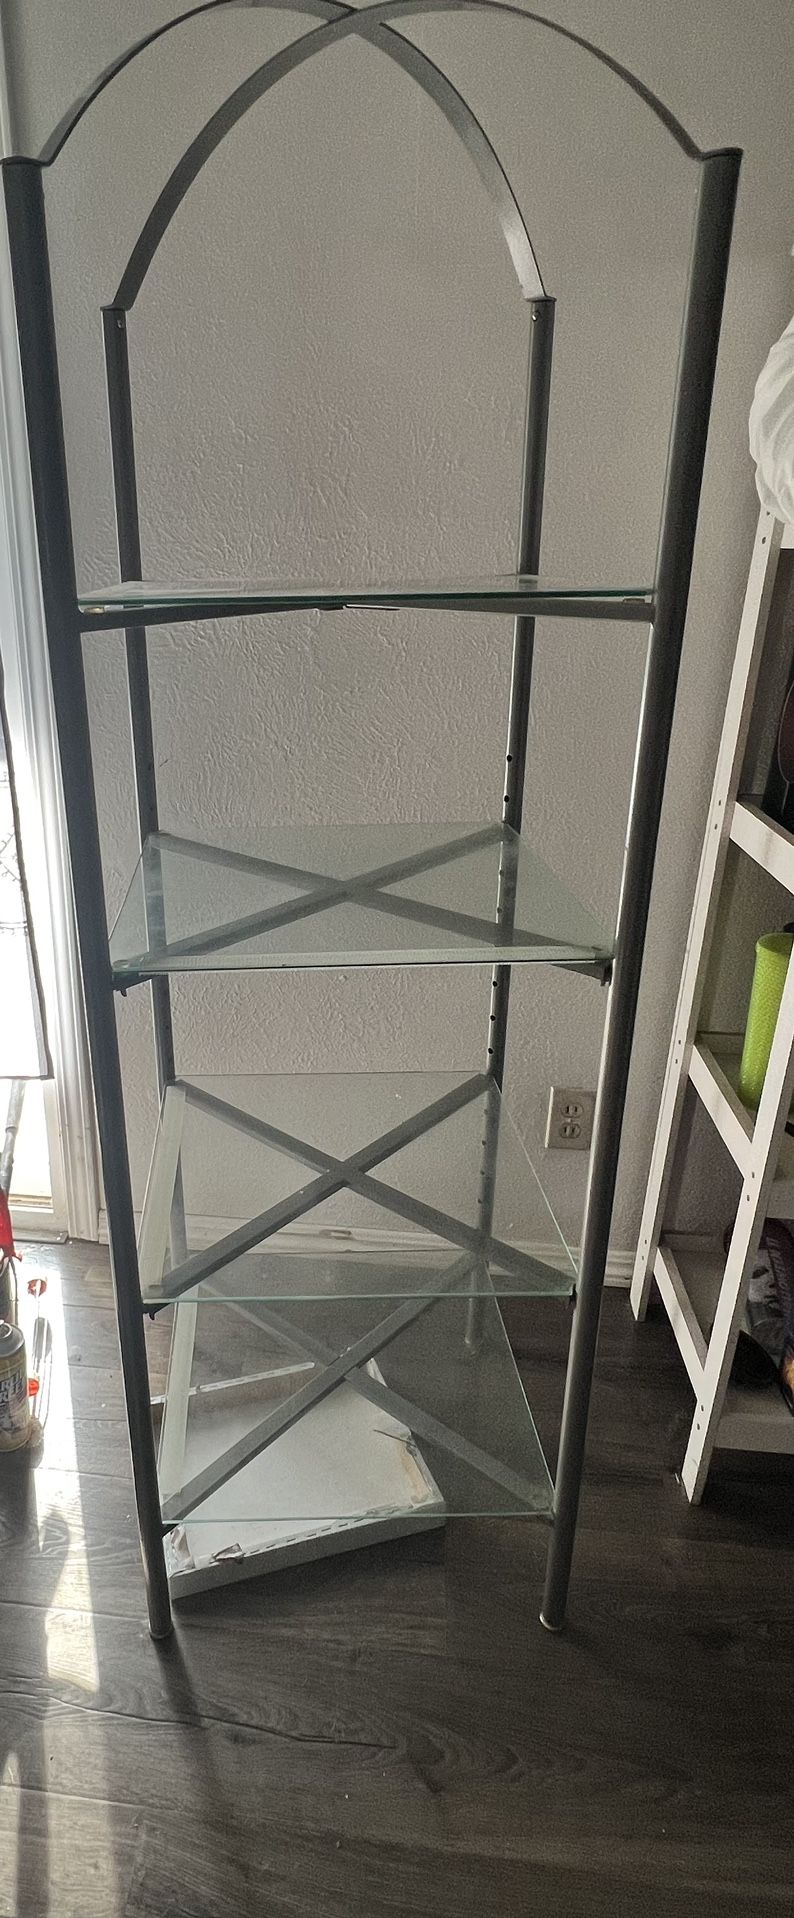 4 Tier Glass Shelf